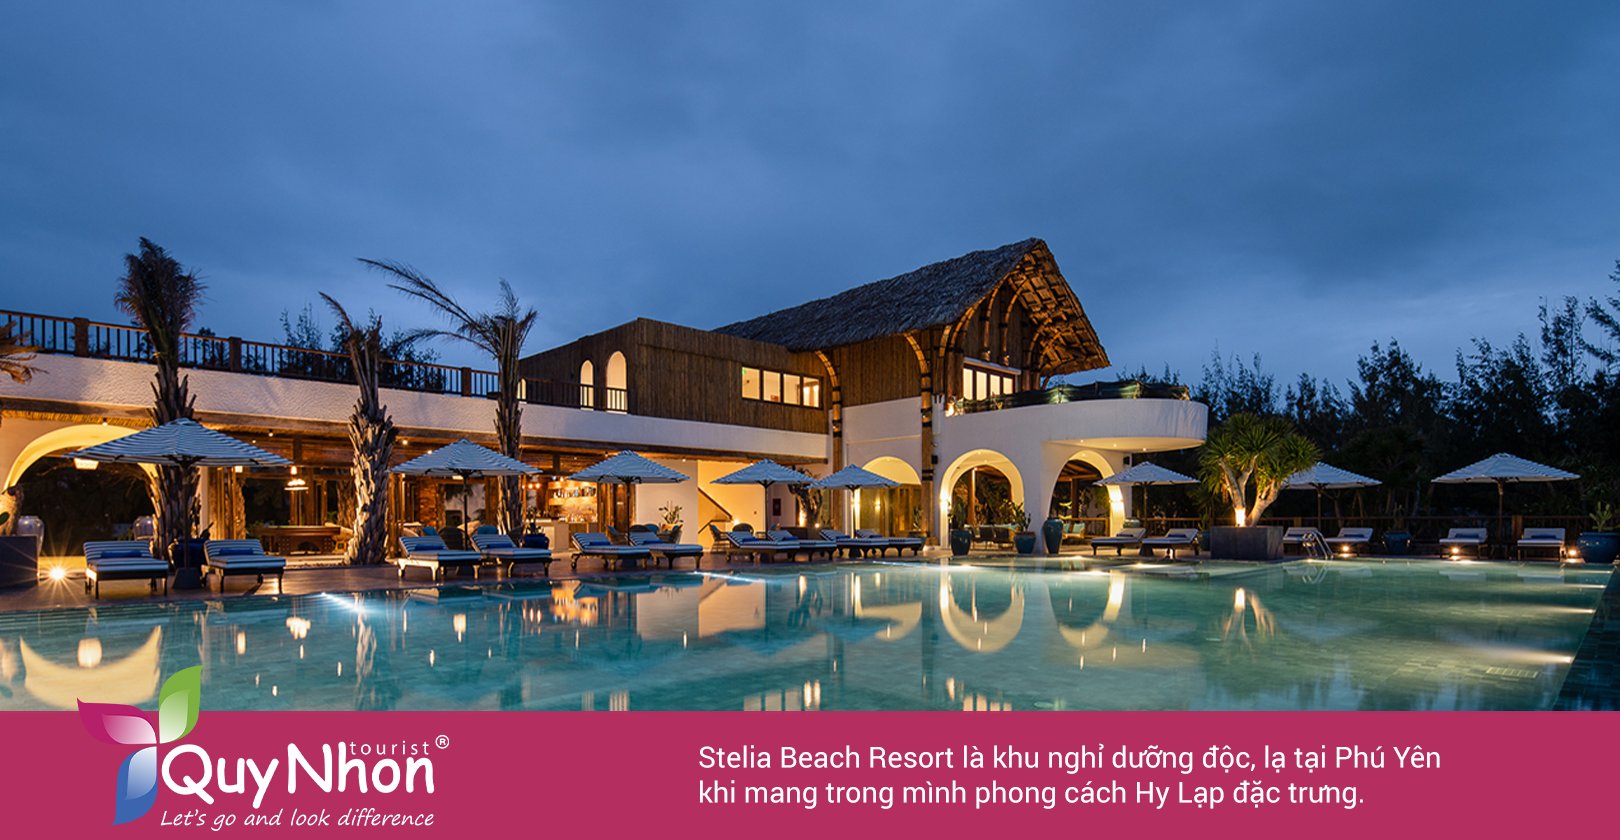 Stelia Beach Resort